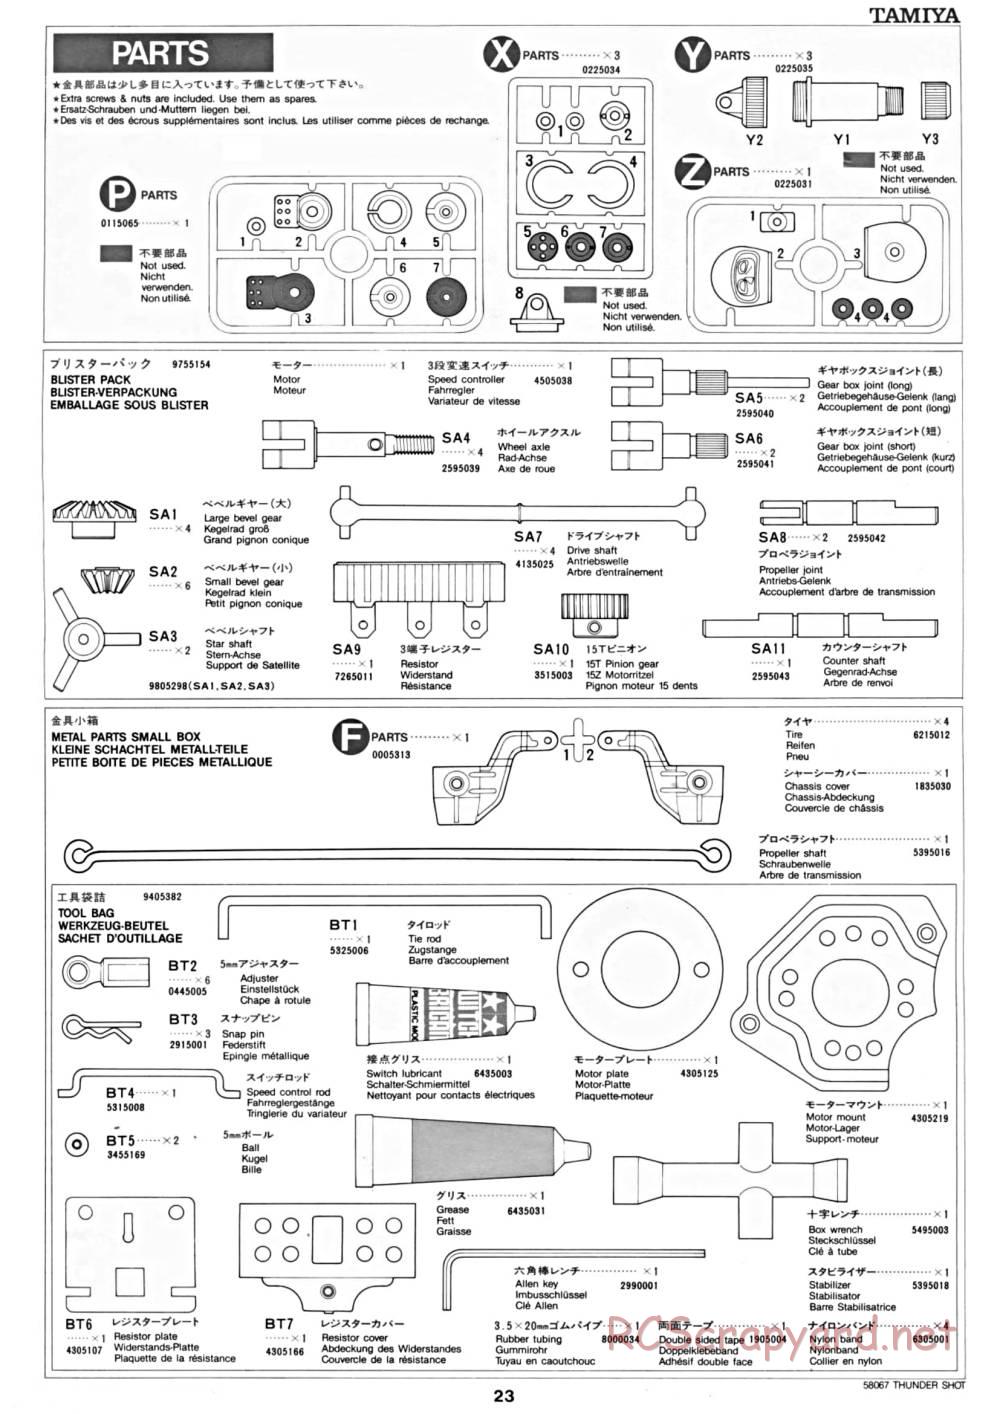 Tamiya - Thunder Shot - 58067 - Manual - Page 23